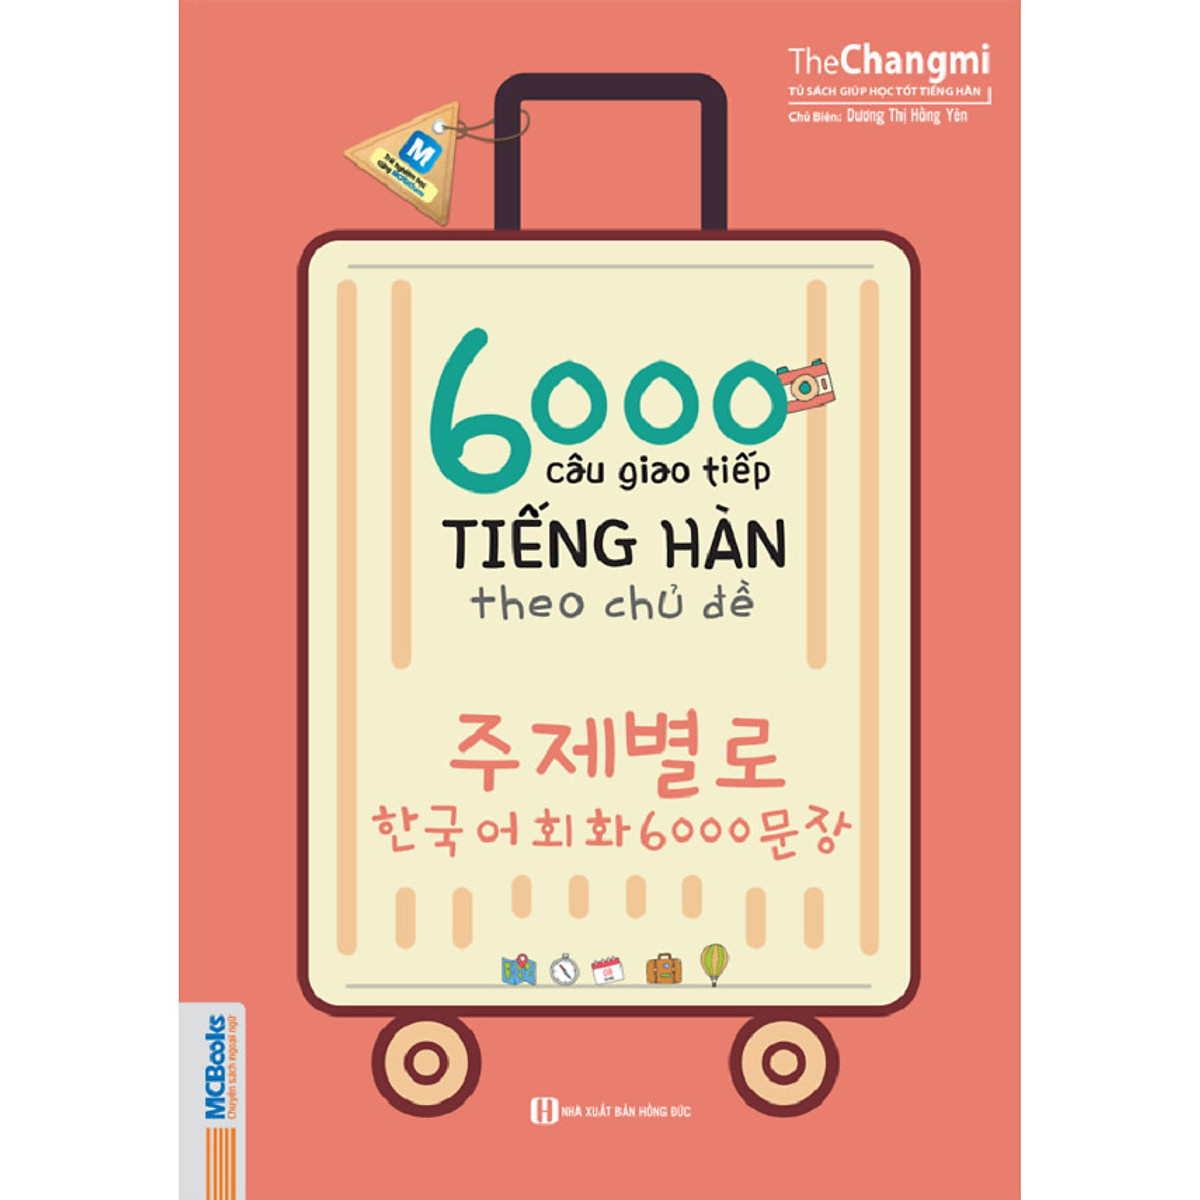 6000 Câu Giao Tiếp Tiếng Hàn Theo Chủ Đề (Tặng Trọn Bộ Tài Liệu Học Tiếng Hàn Online: Giáo Trình Tổng Hợp Và Luyện Thi Topik) (Học Kèm App: MCBooks Application)